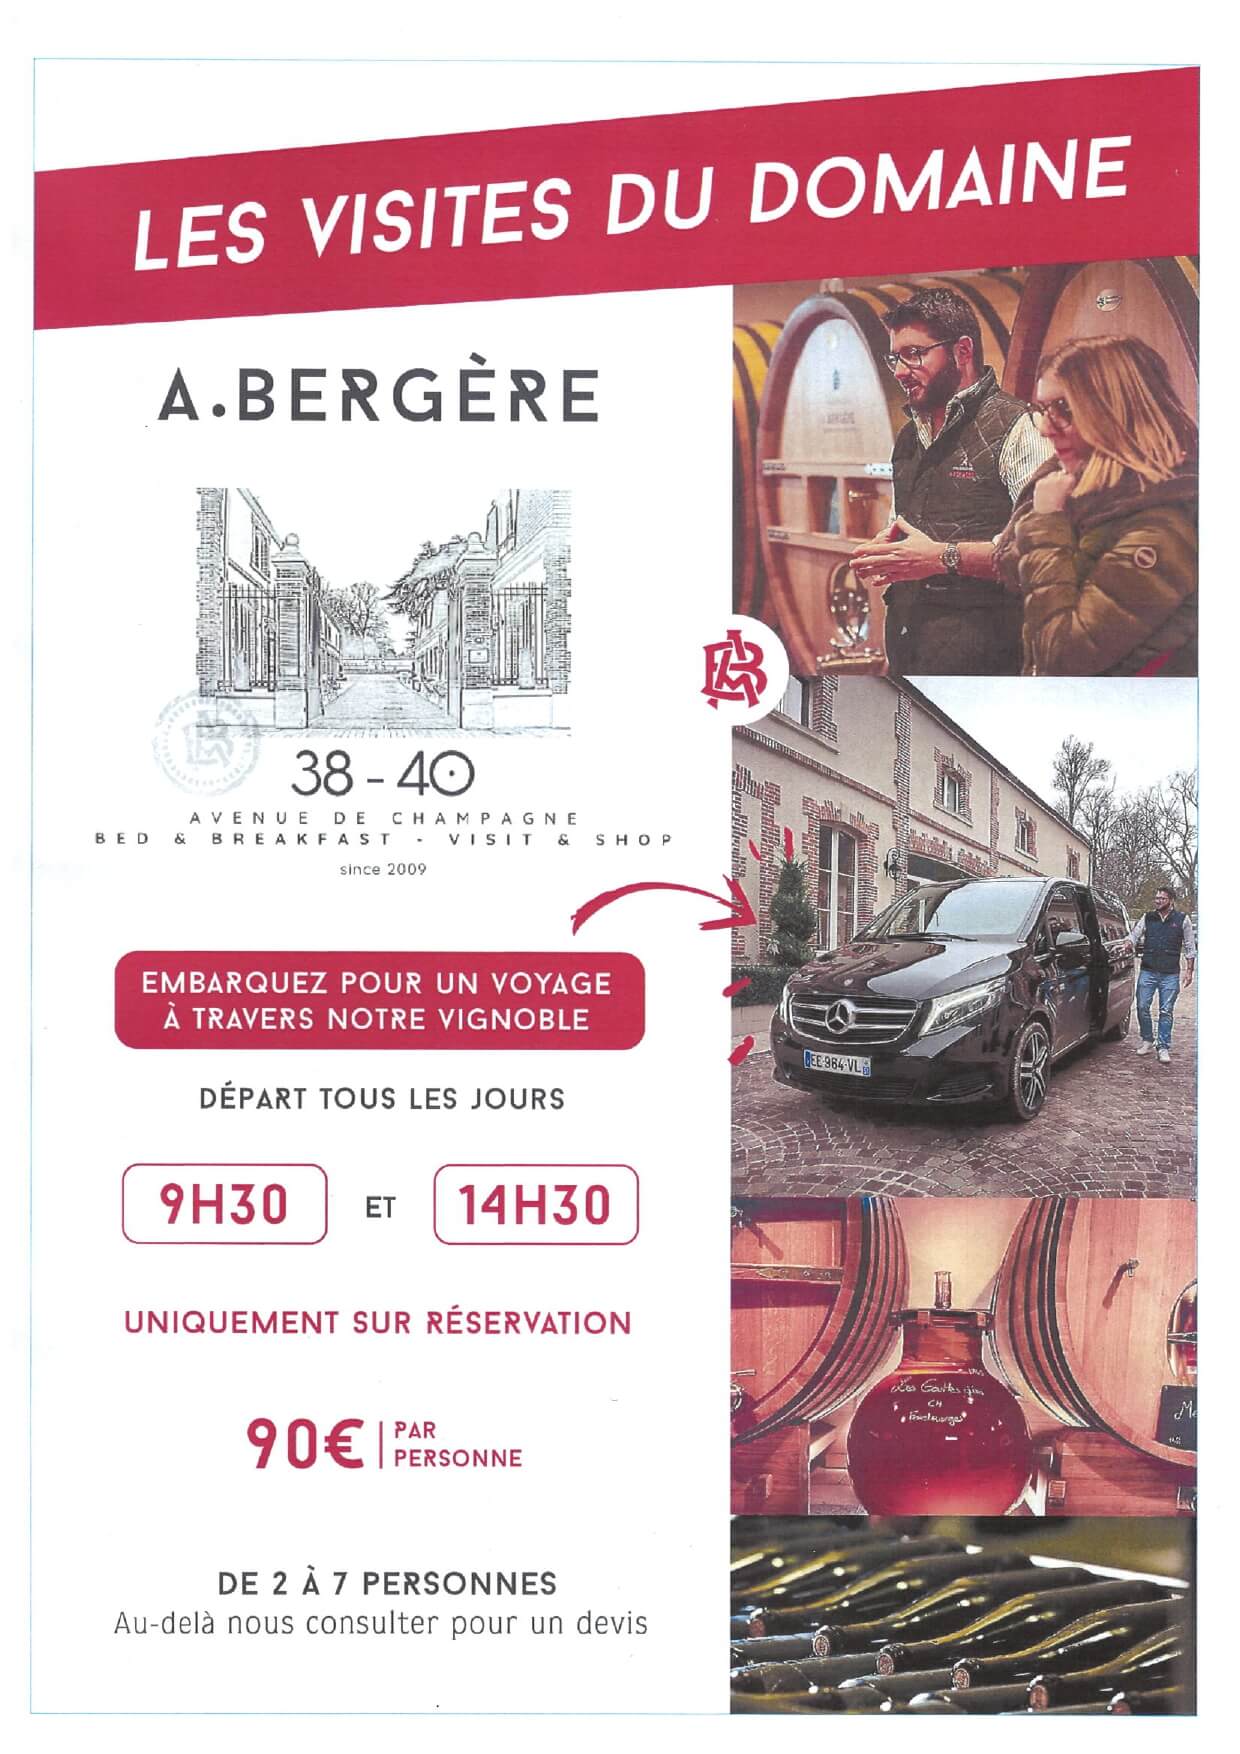 Champagne Tour André Bergère